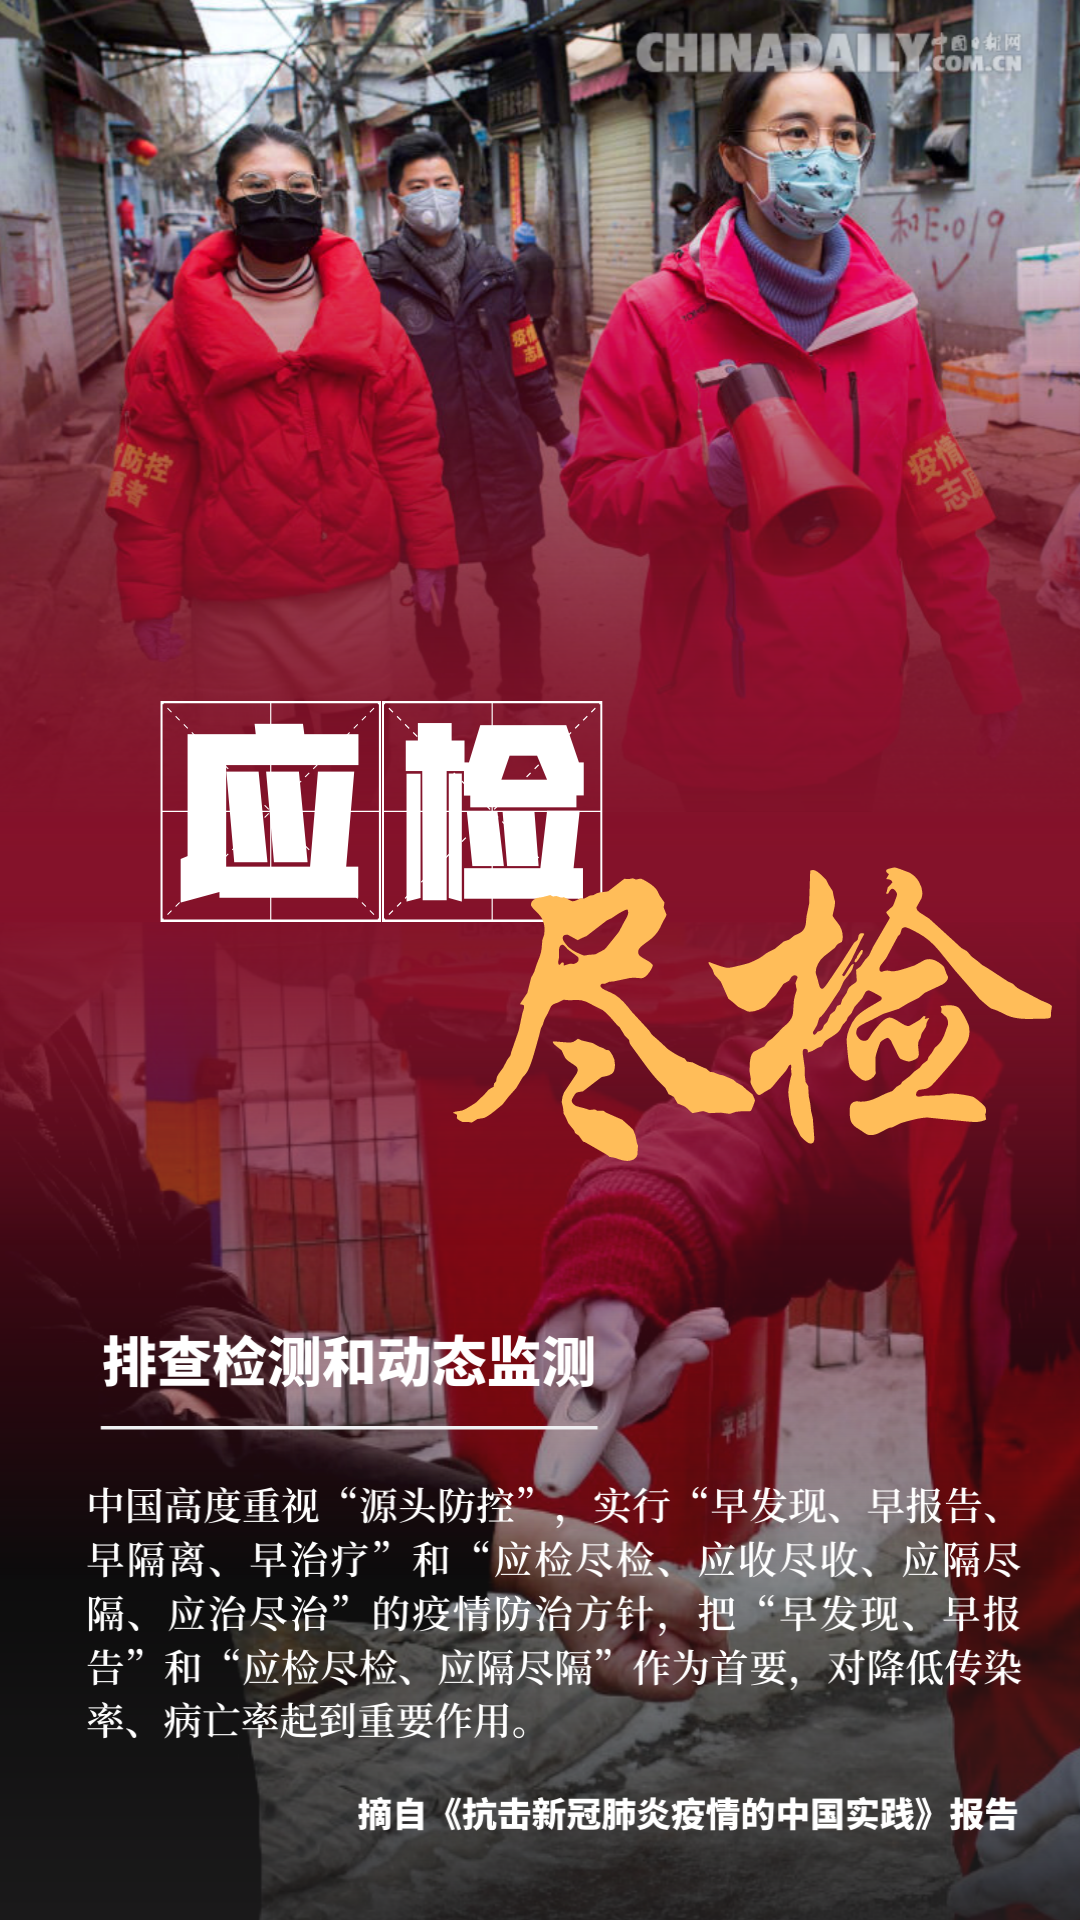 海报 ▏抗击新冠肺炎疫情的中国实践